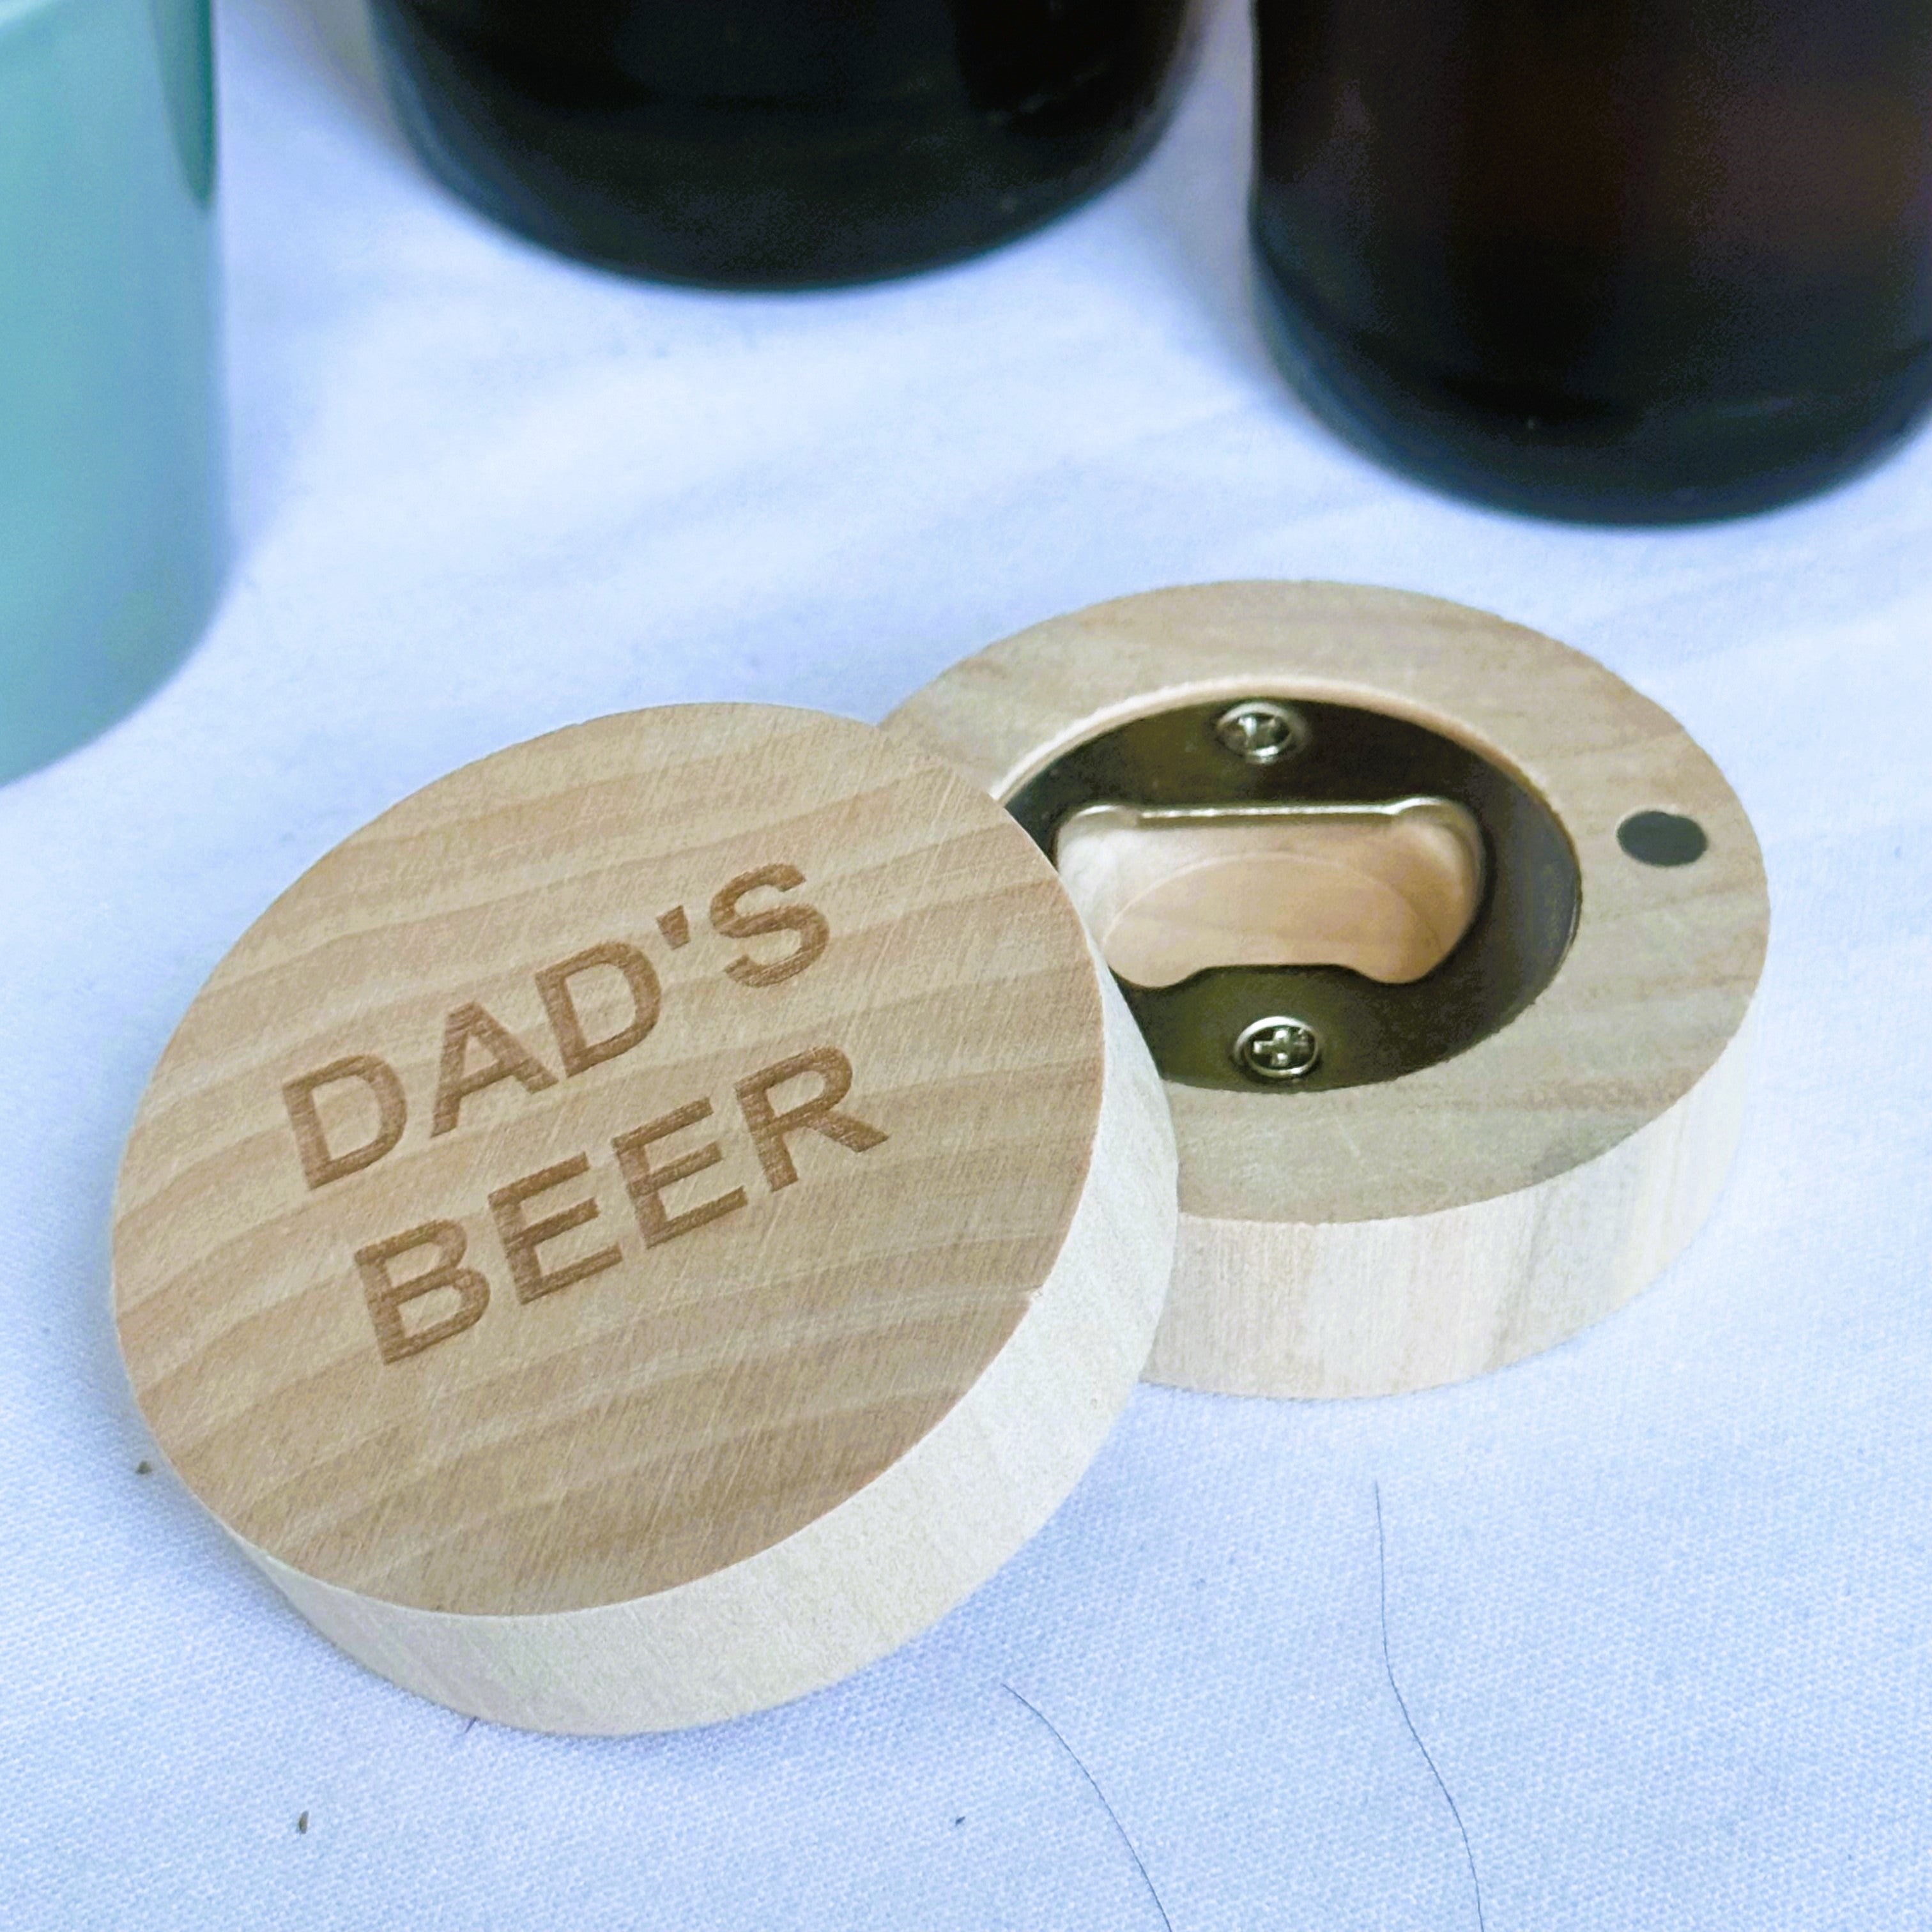  bottle opener laser engraved with Dad's beer